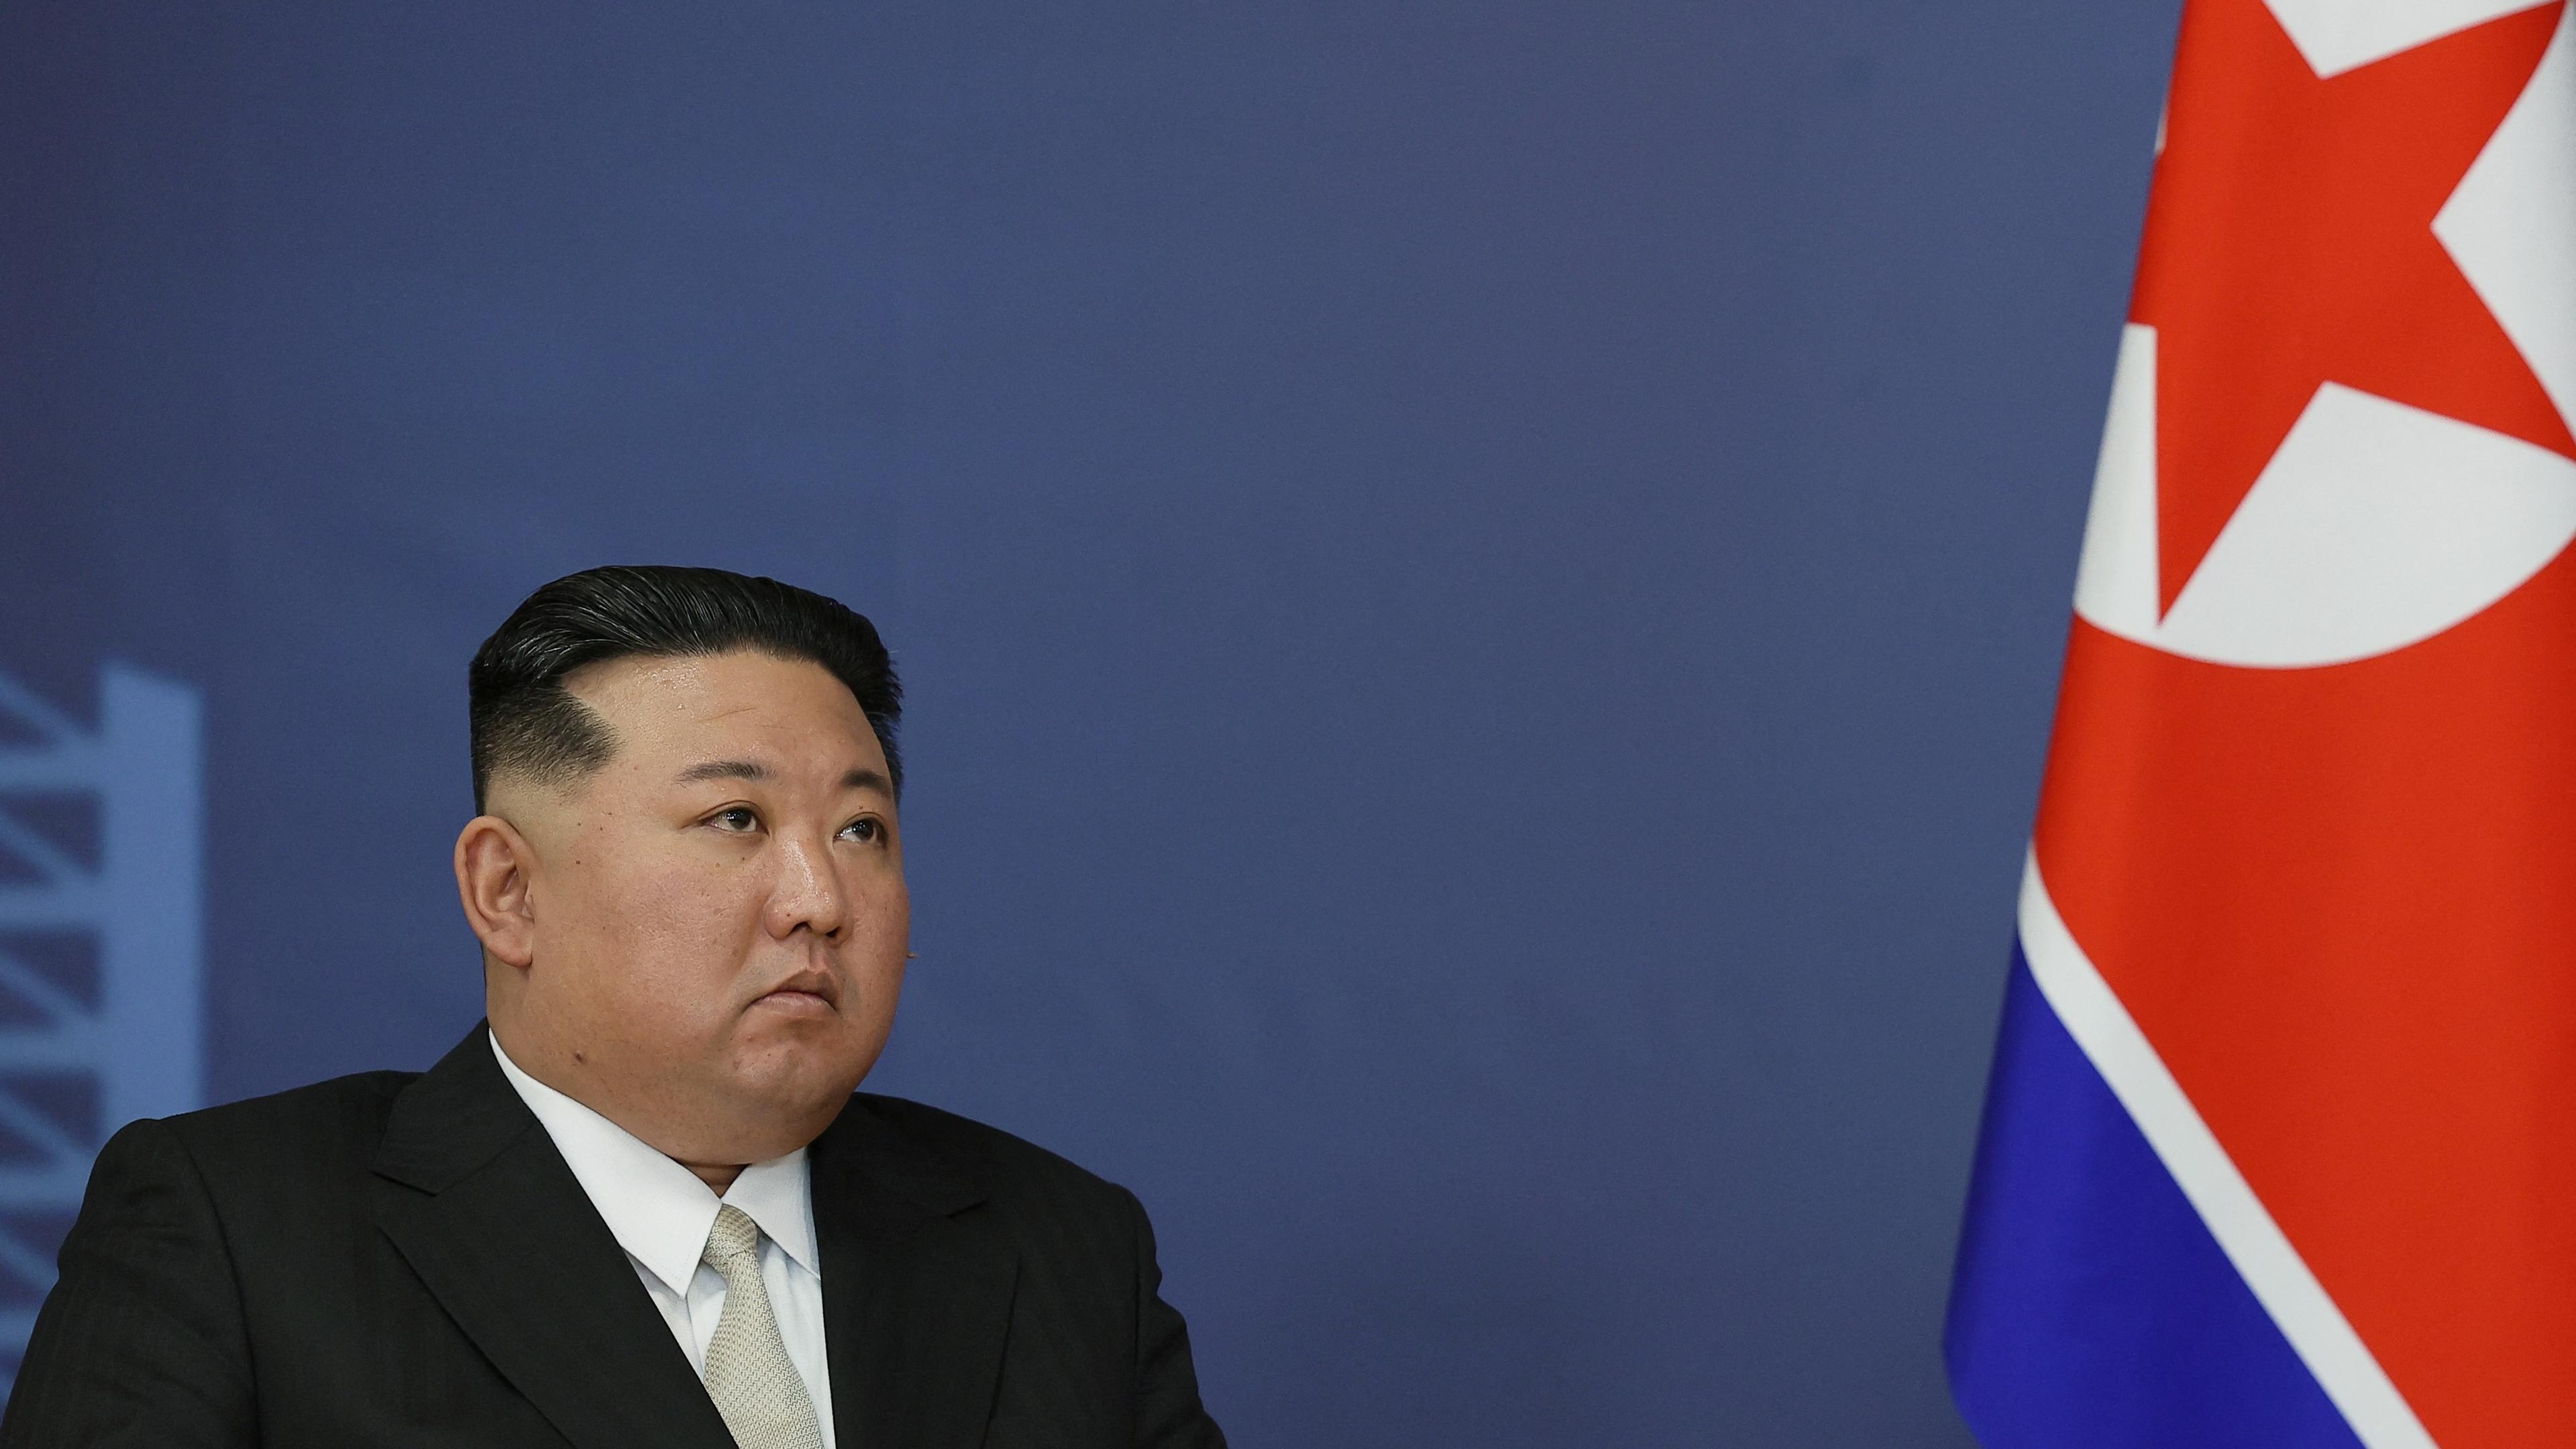 Nordkoreas ledare Kim Jong-Un. Foto: Vladimir Smirnov/POOL/AFP via Getty Images